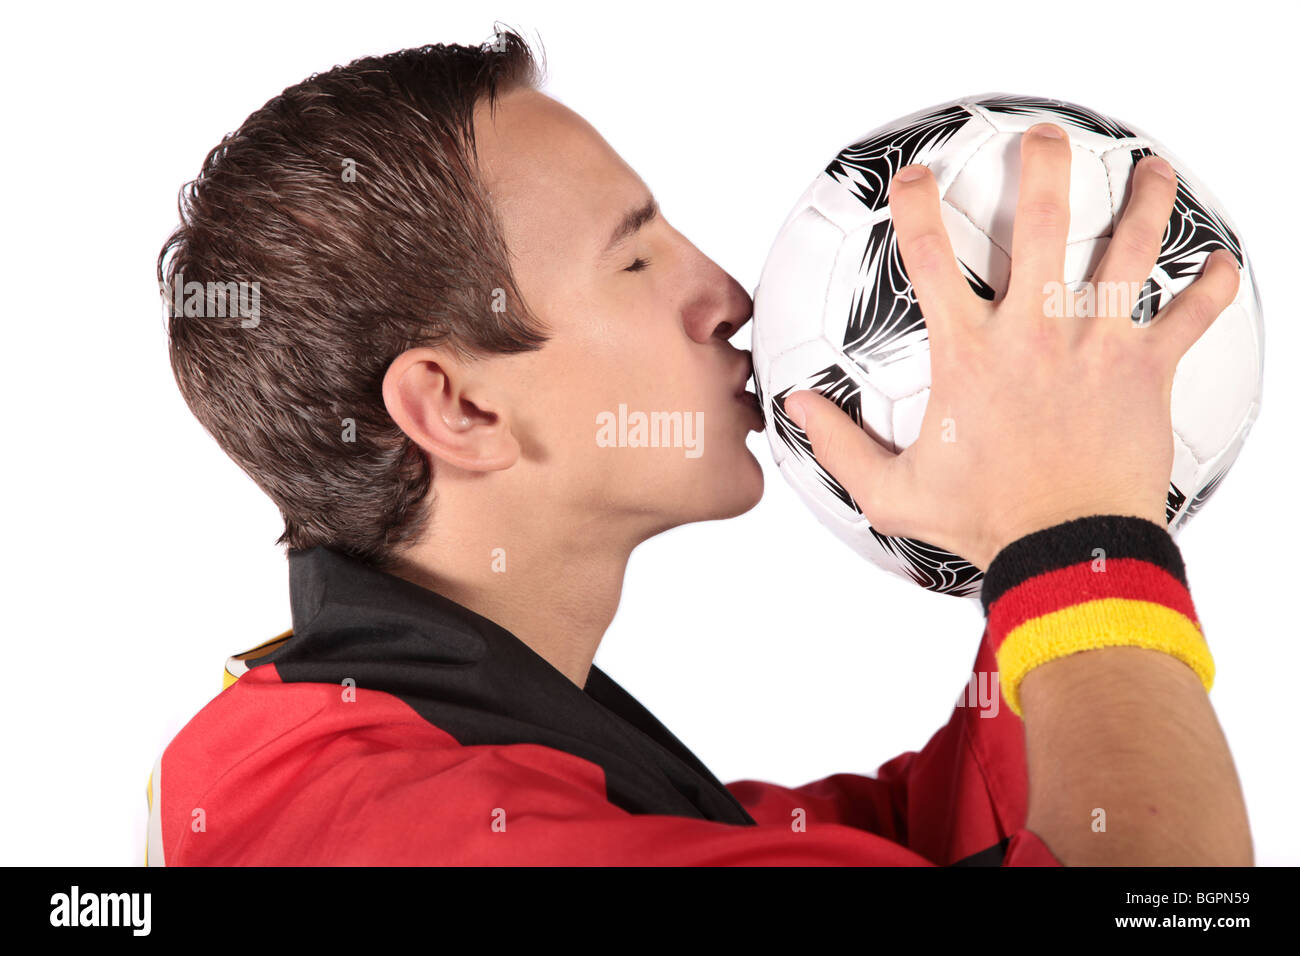 Un jeune allemand fan de foot.Tous les isolé sur fond blanc. Banque D'Images